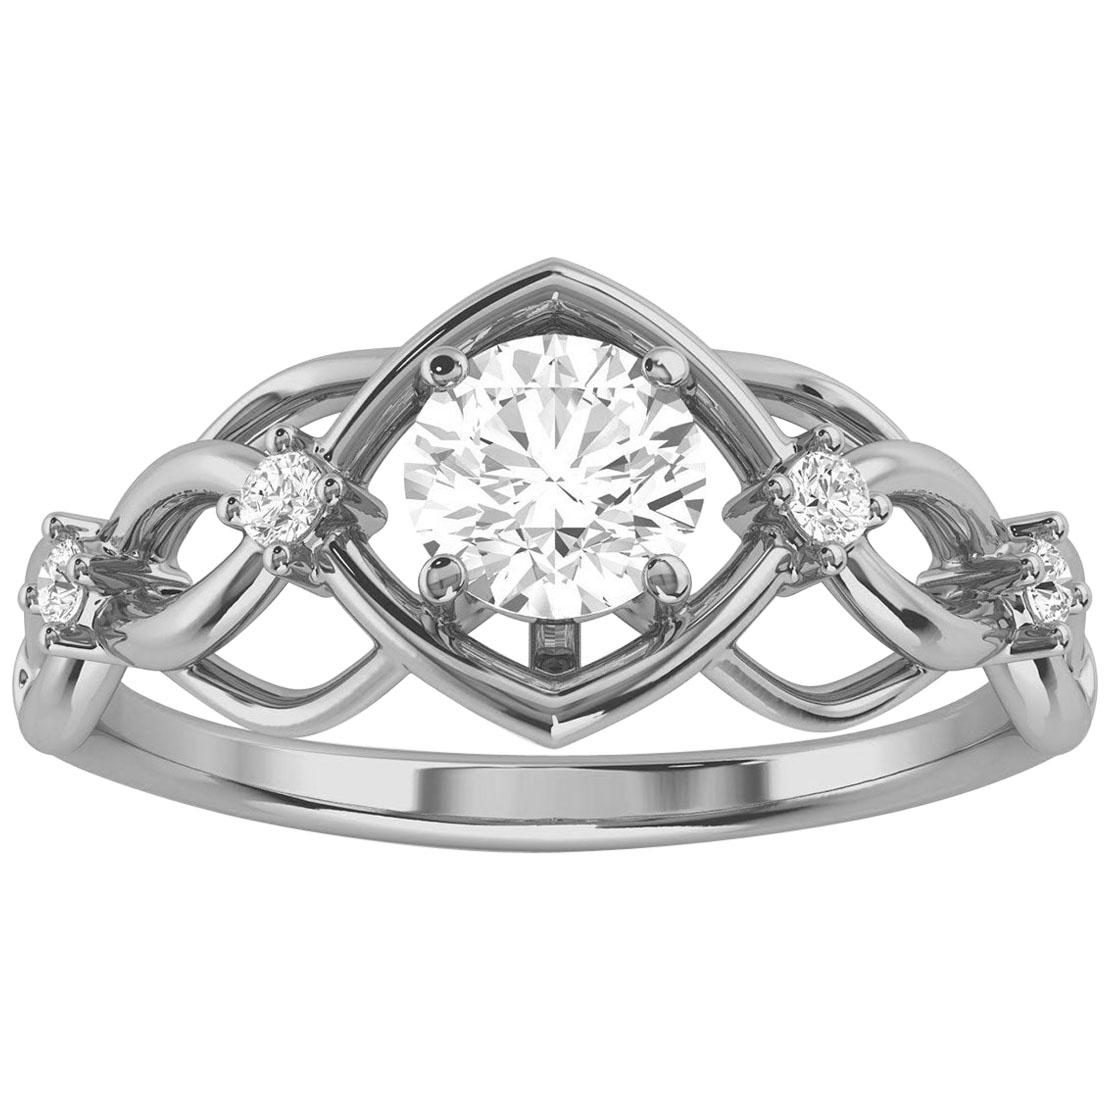 Platinum Delicate Orim Diamond Ring '2/5 Ct. Tw'